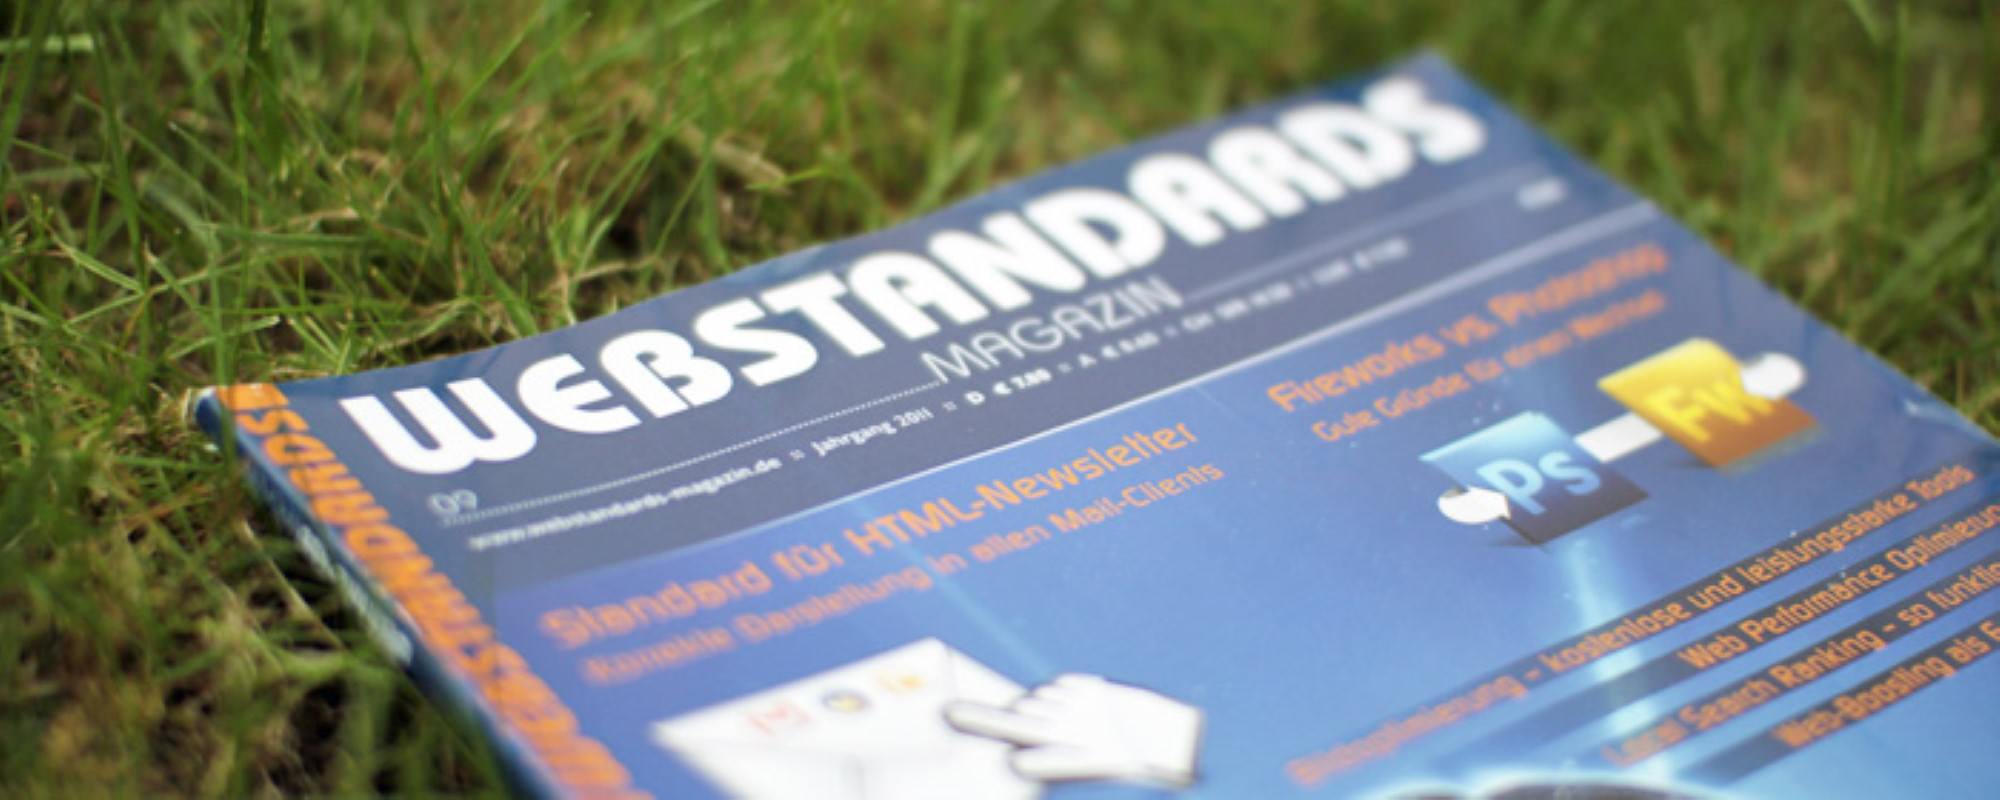 Aktuelle Ausgabe der Zeitschrift für Webstandards